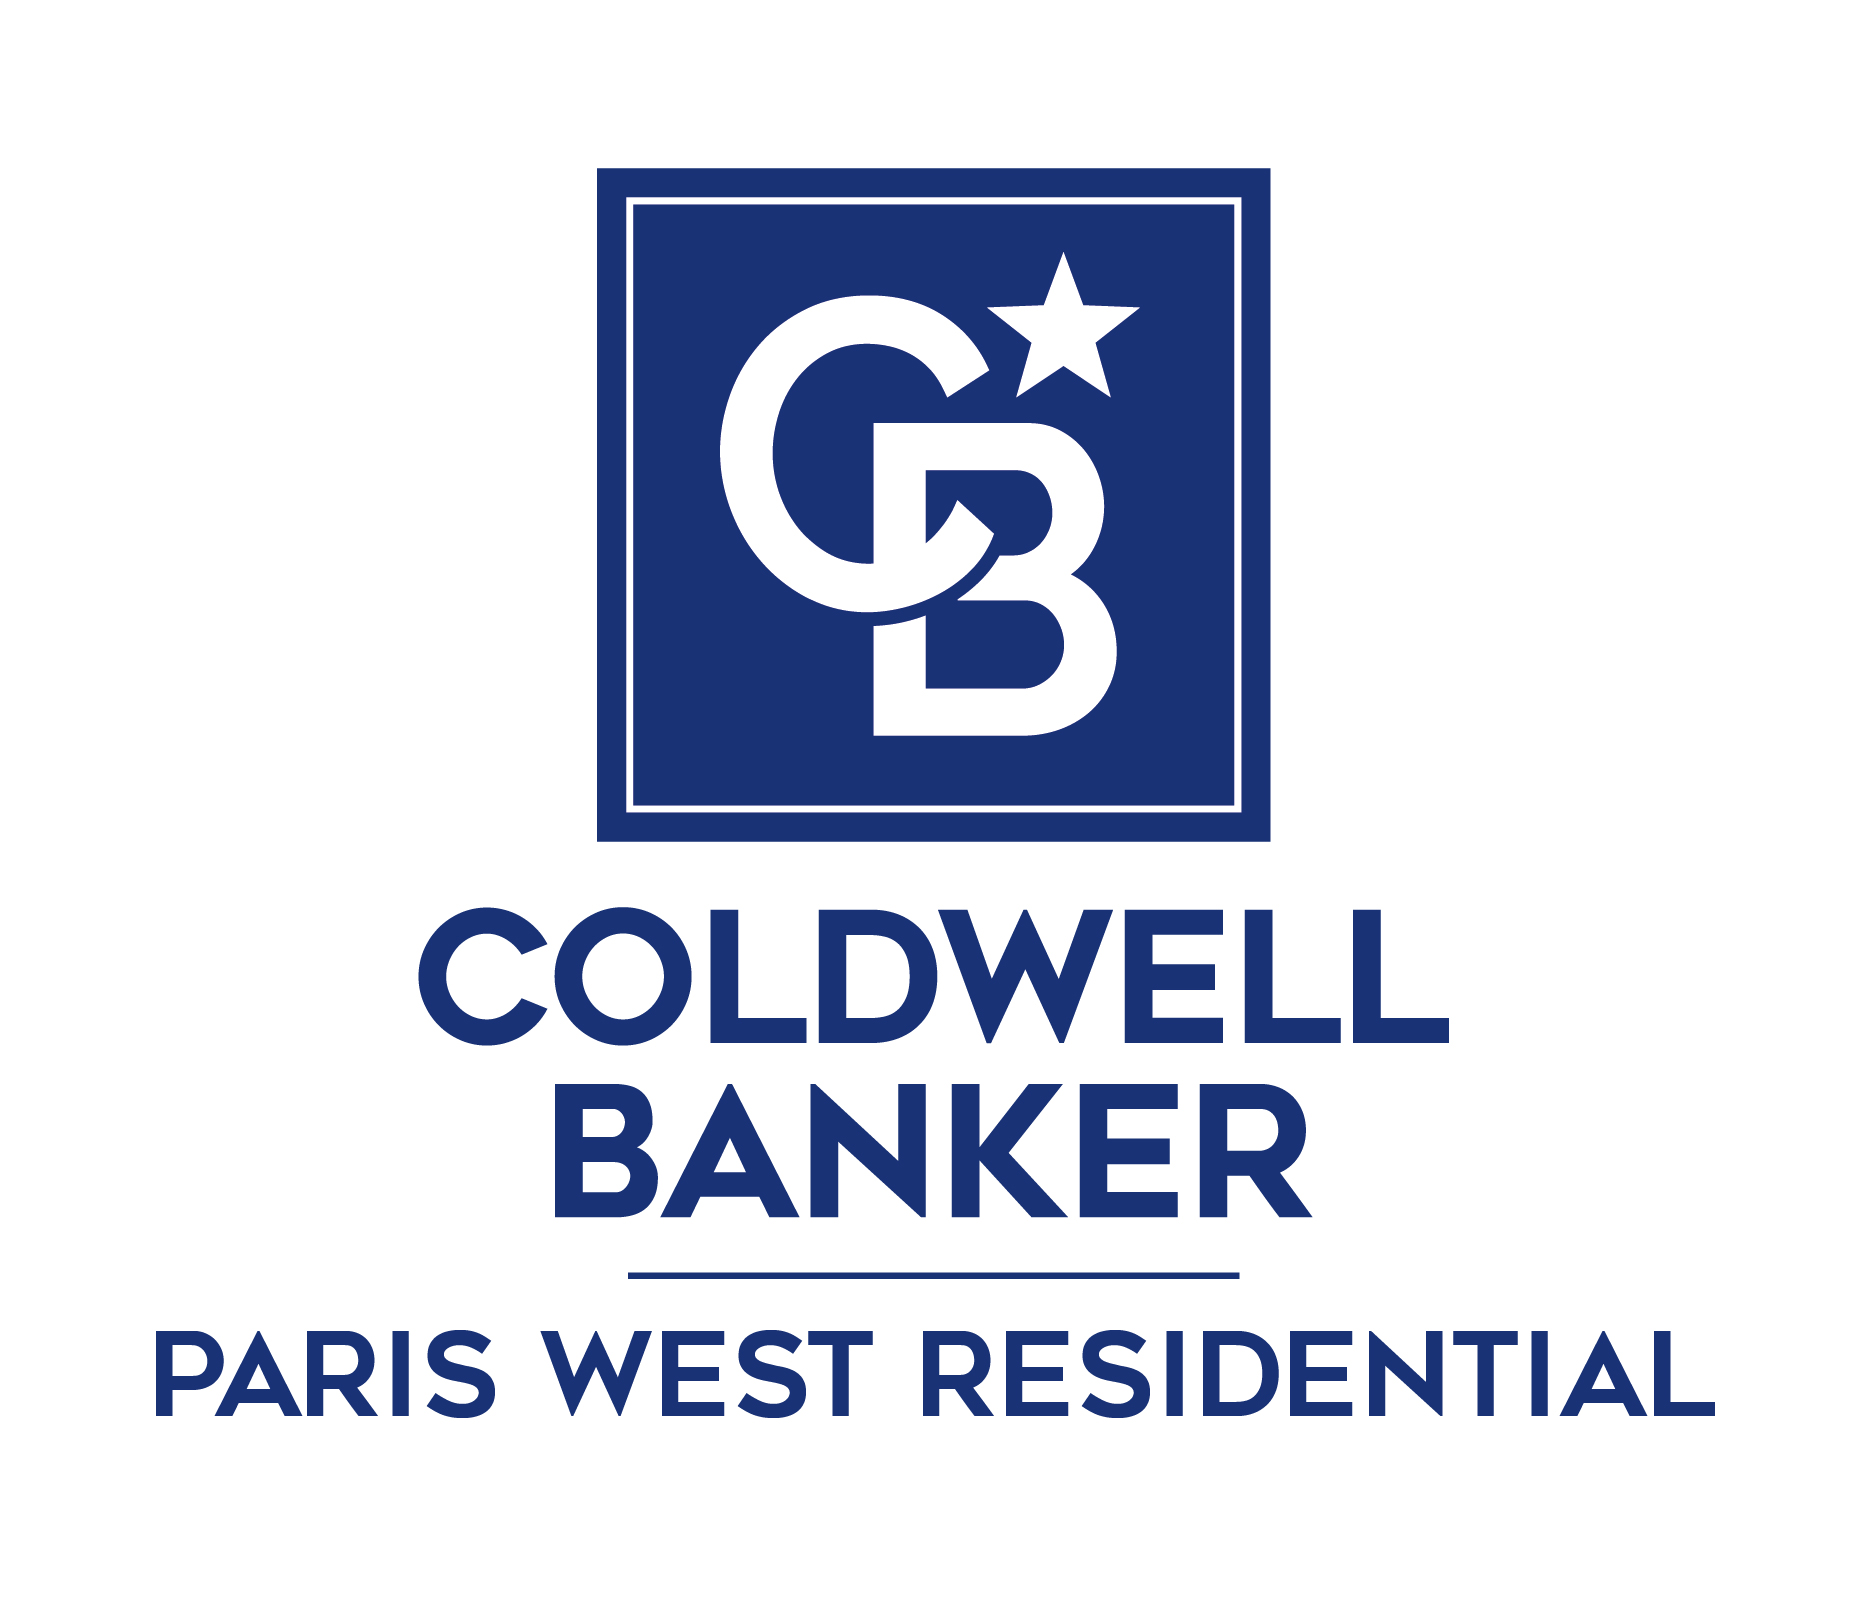 Agence immobilière à Saint-germain-en-laye Coldwell Banker Paris West Residential 